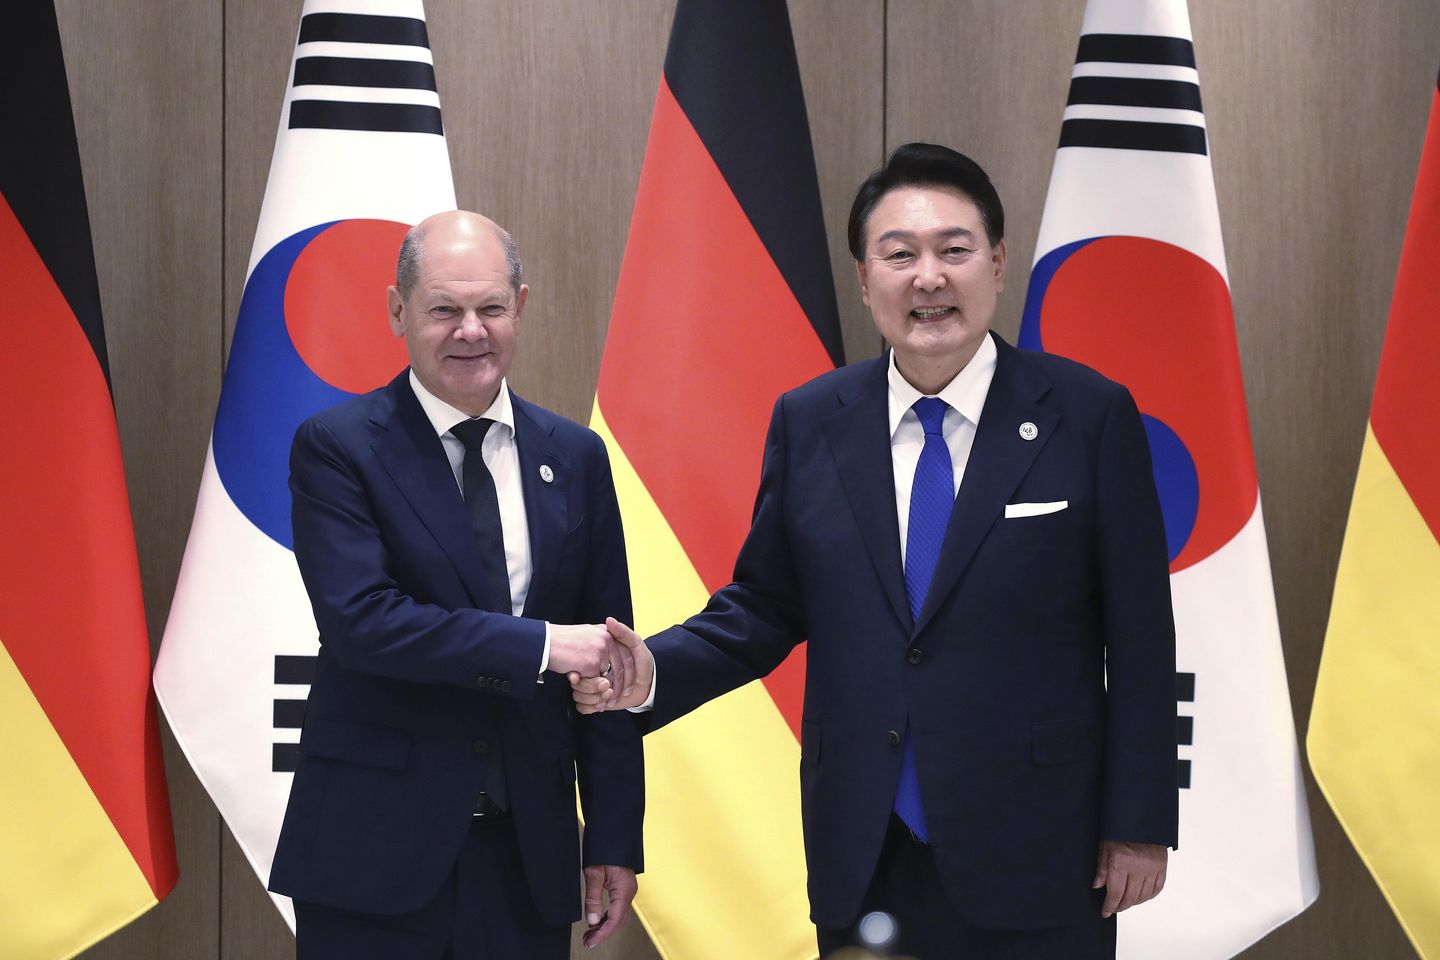 Güney Koreli ve Alman liderler, Kuzey Kore ve tedarik zincirlerinde işbirliği konusunda anlaştılar